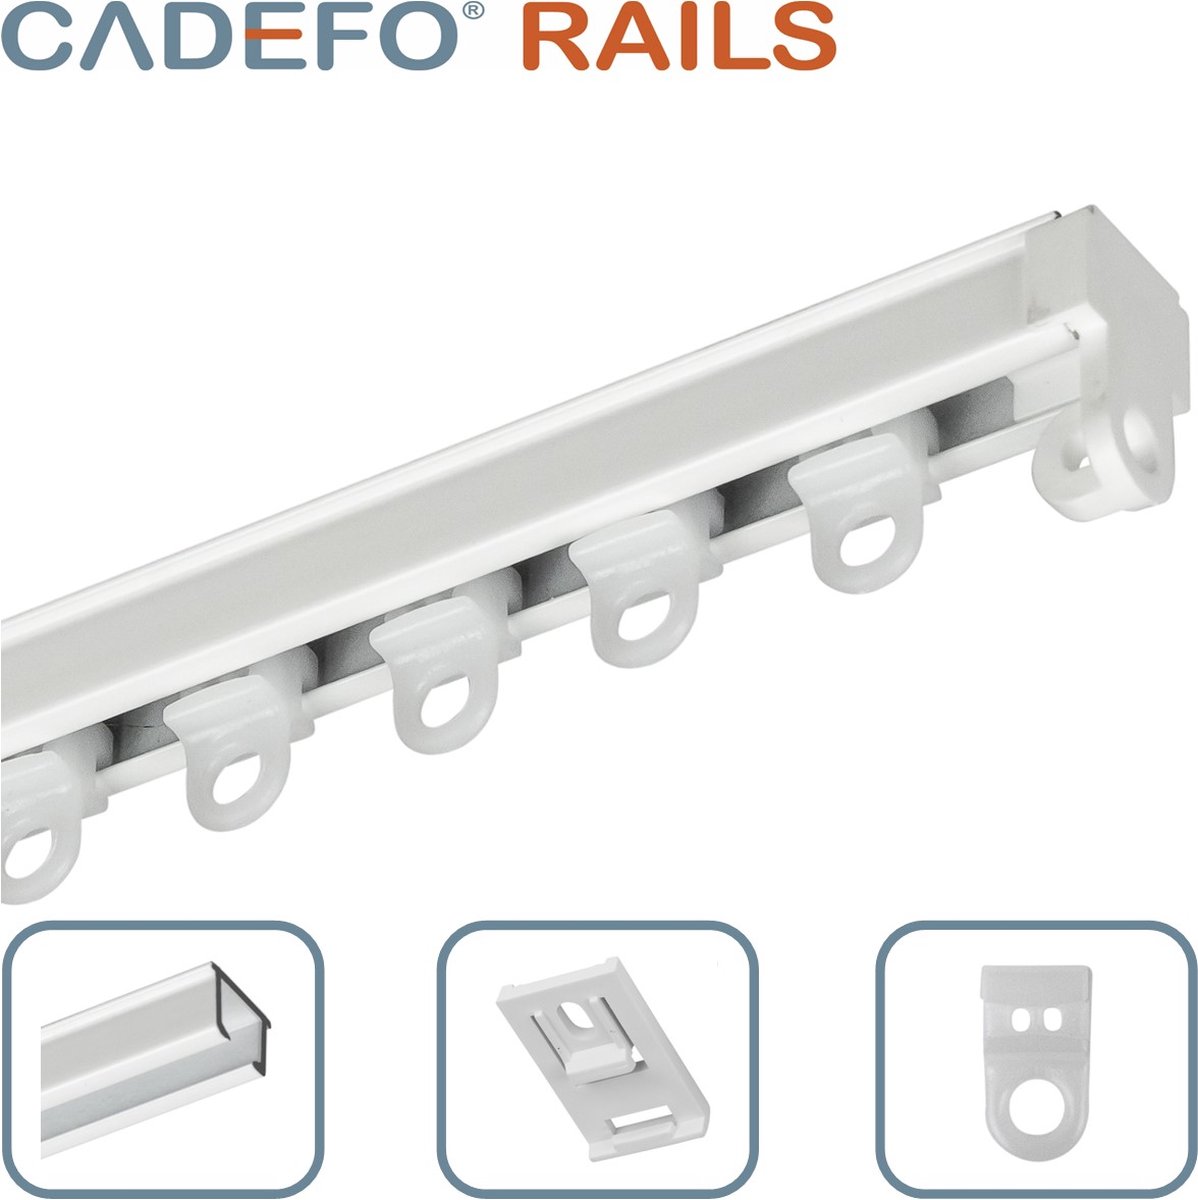 CADEFO RAILS (451 - 500 cm) Gordijnrails - Compleet op maat! - UIT 1 STUK - Leverbaar tot 6 meter - Plafondbevestiging - Lengte 484 cm